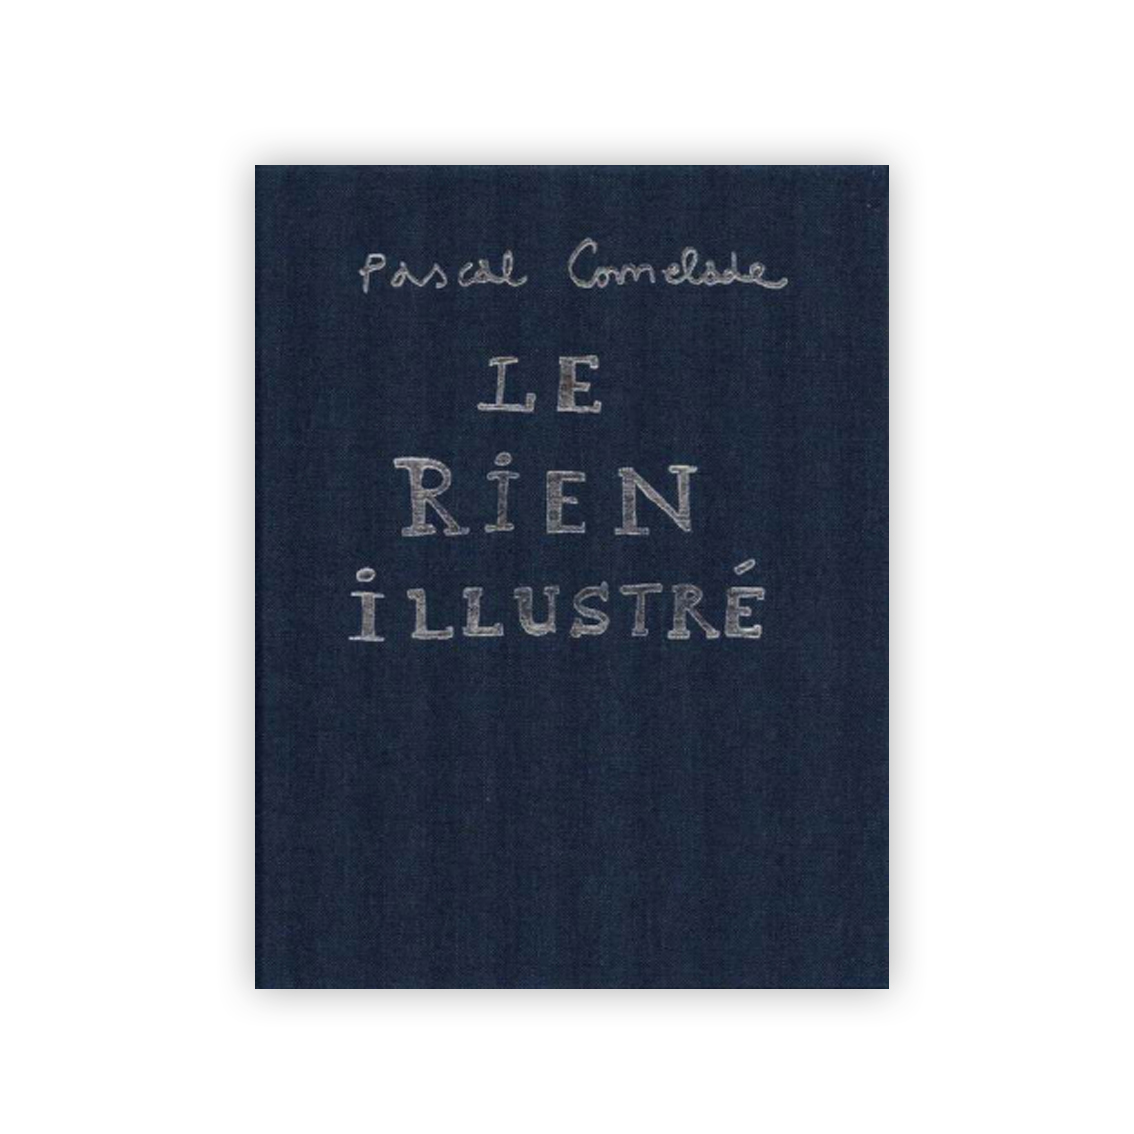 Pascal Comelade Le Rien illustré 150 reproductions couleurs de créations de Pascal Comelade